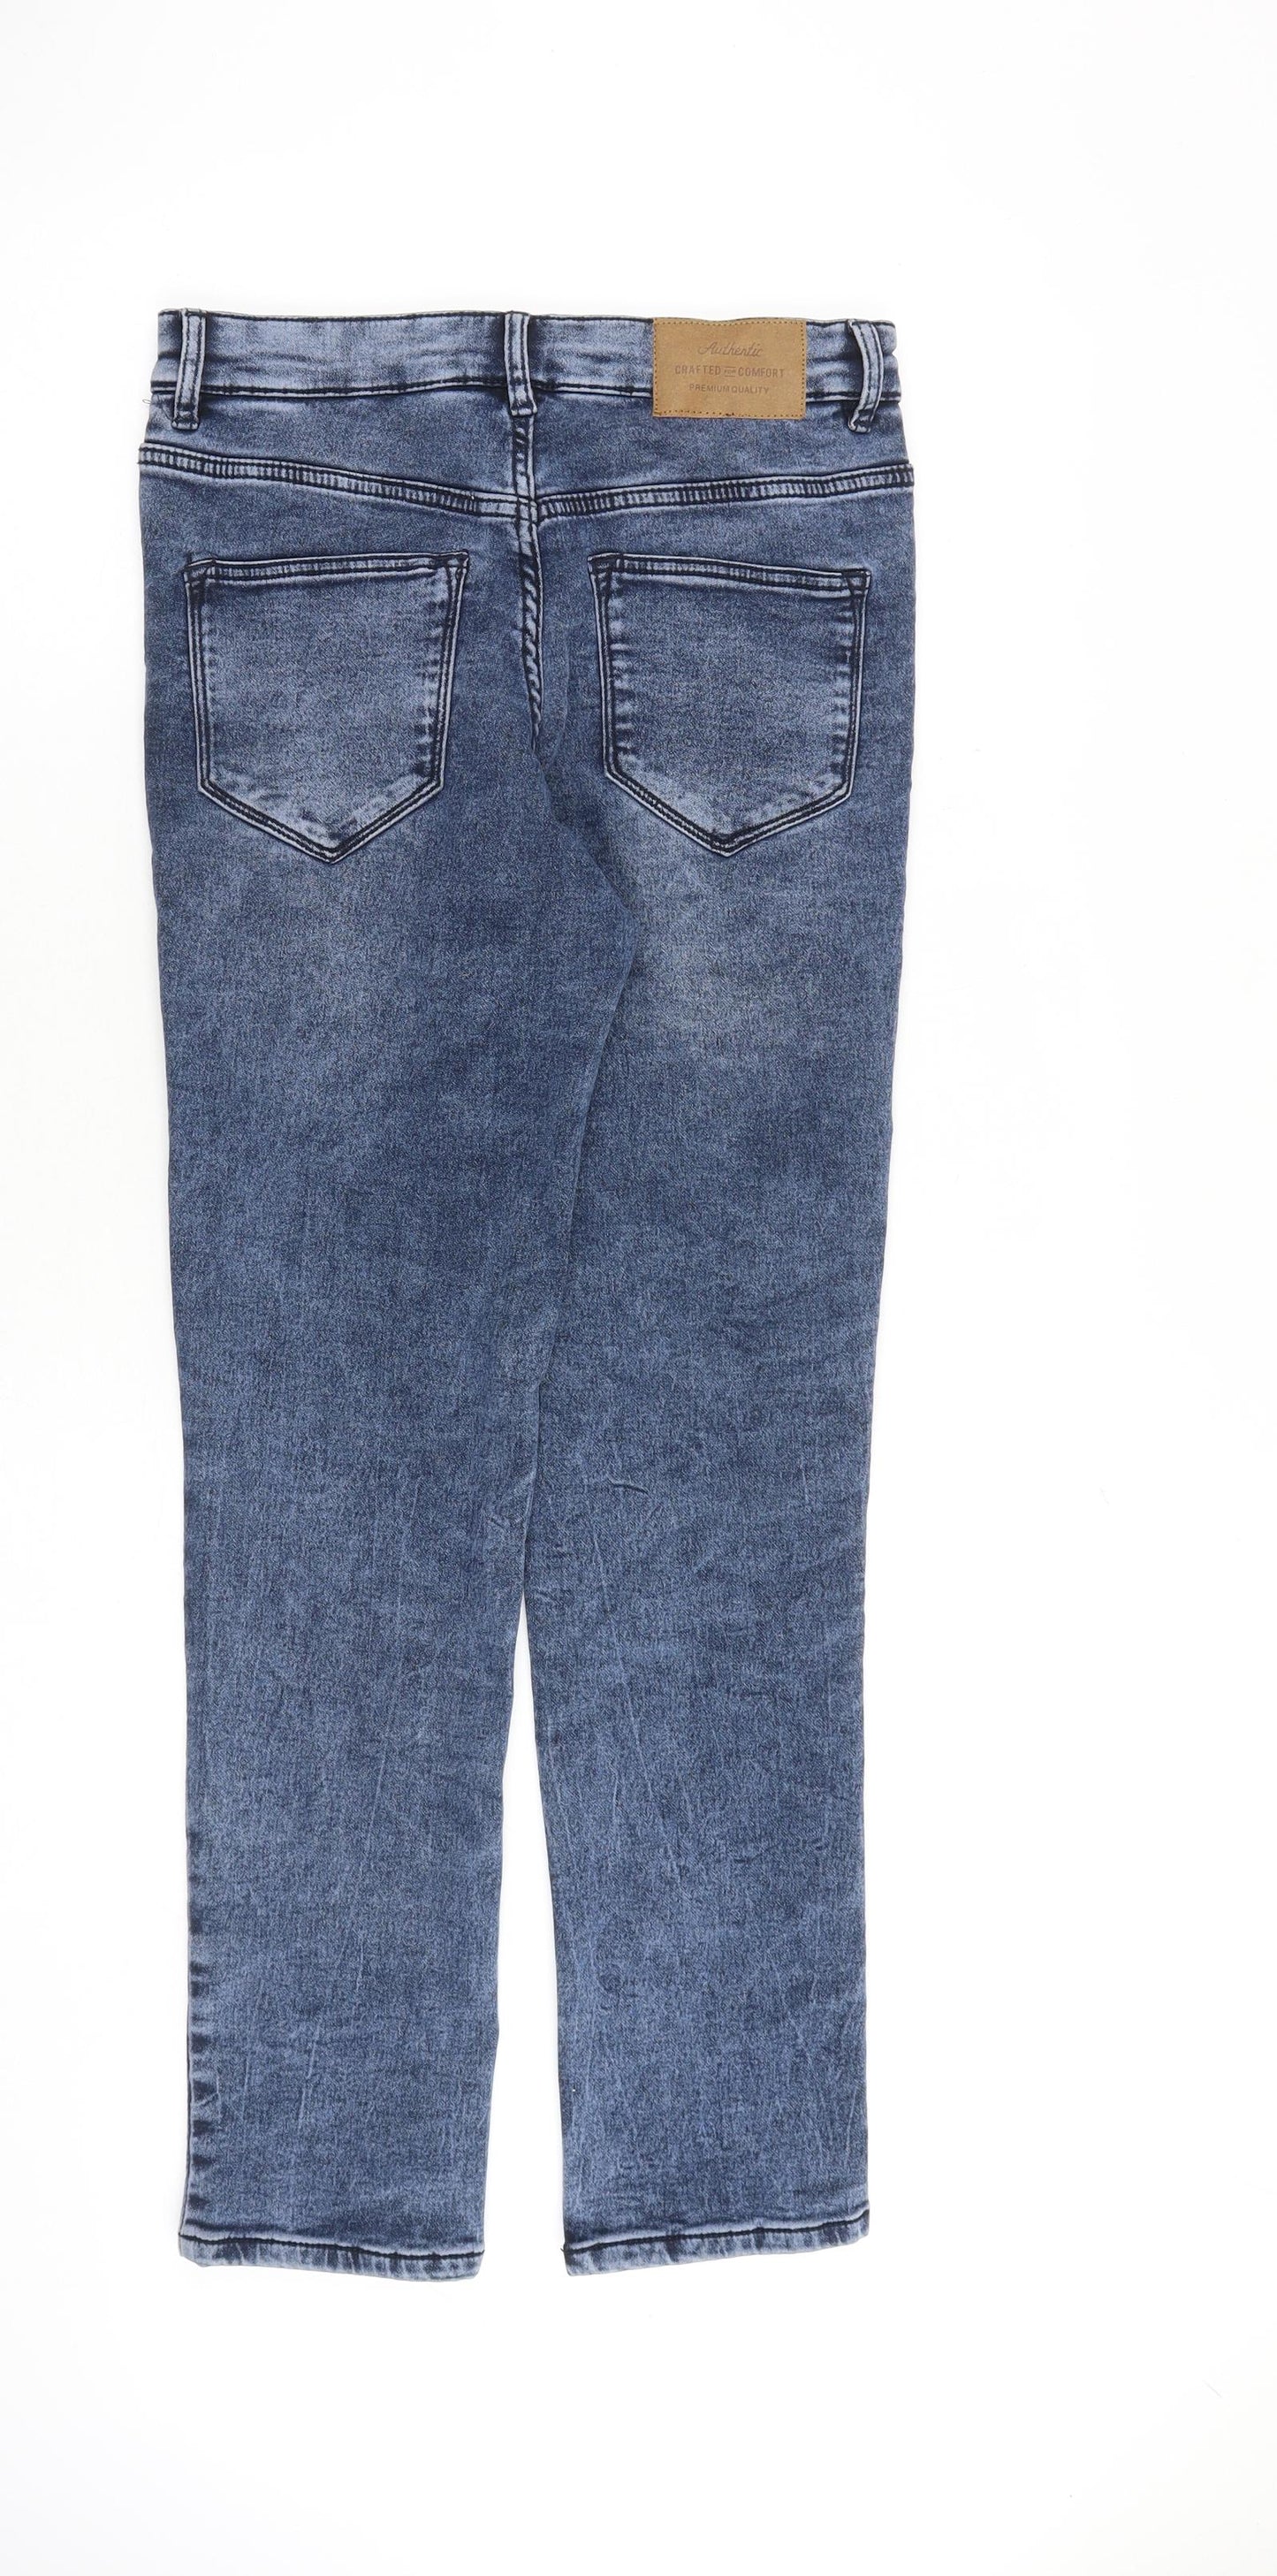 TU Mens Blue Cotton Skinny Jeans Size 30 in L30 in Slim Zip